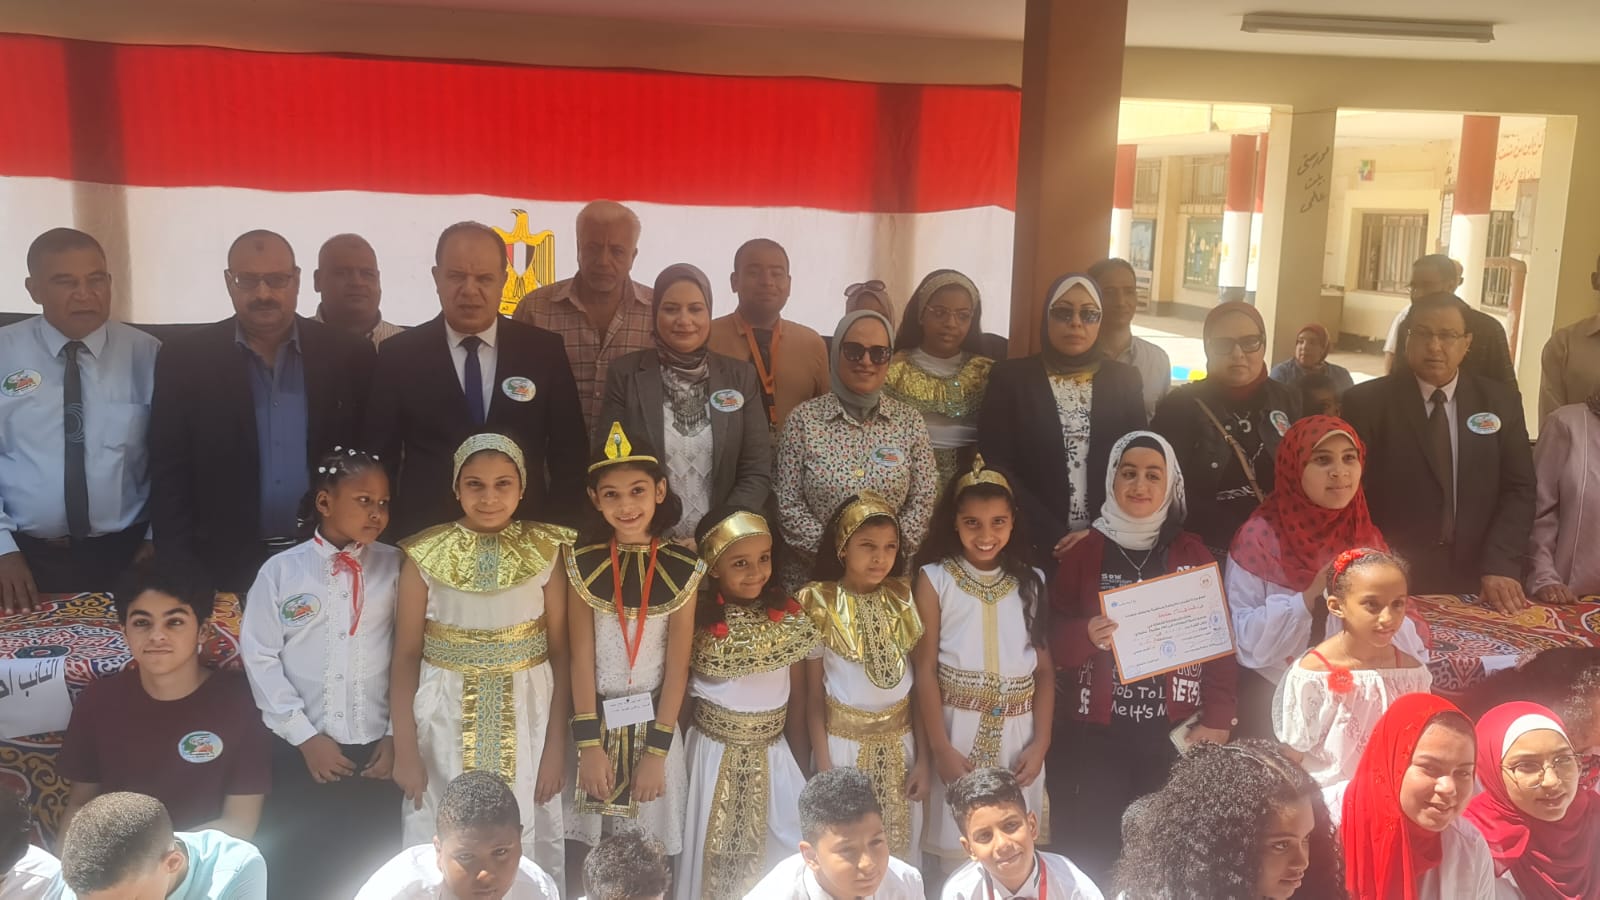 نائب رئيس ;الحرية المصري; يحضر حفل ختام الأنشطة الصيفية بإدارة شرق التعليمية | صور